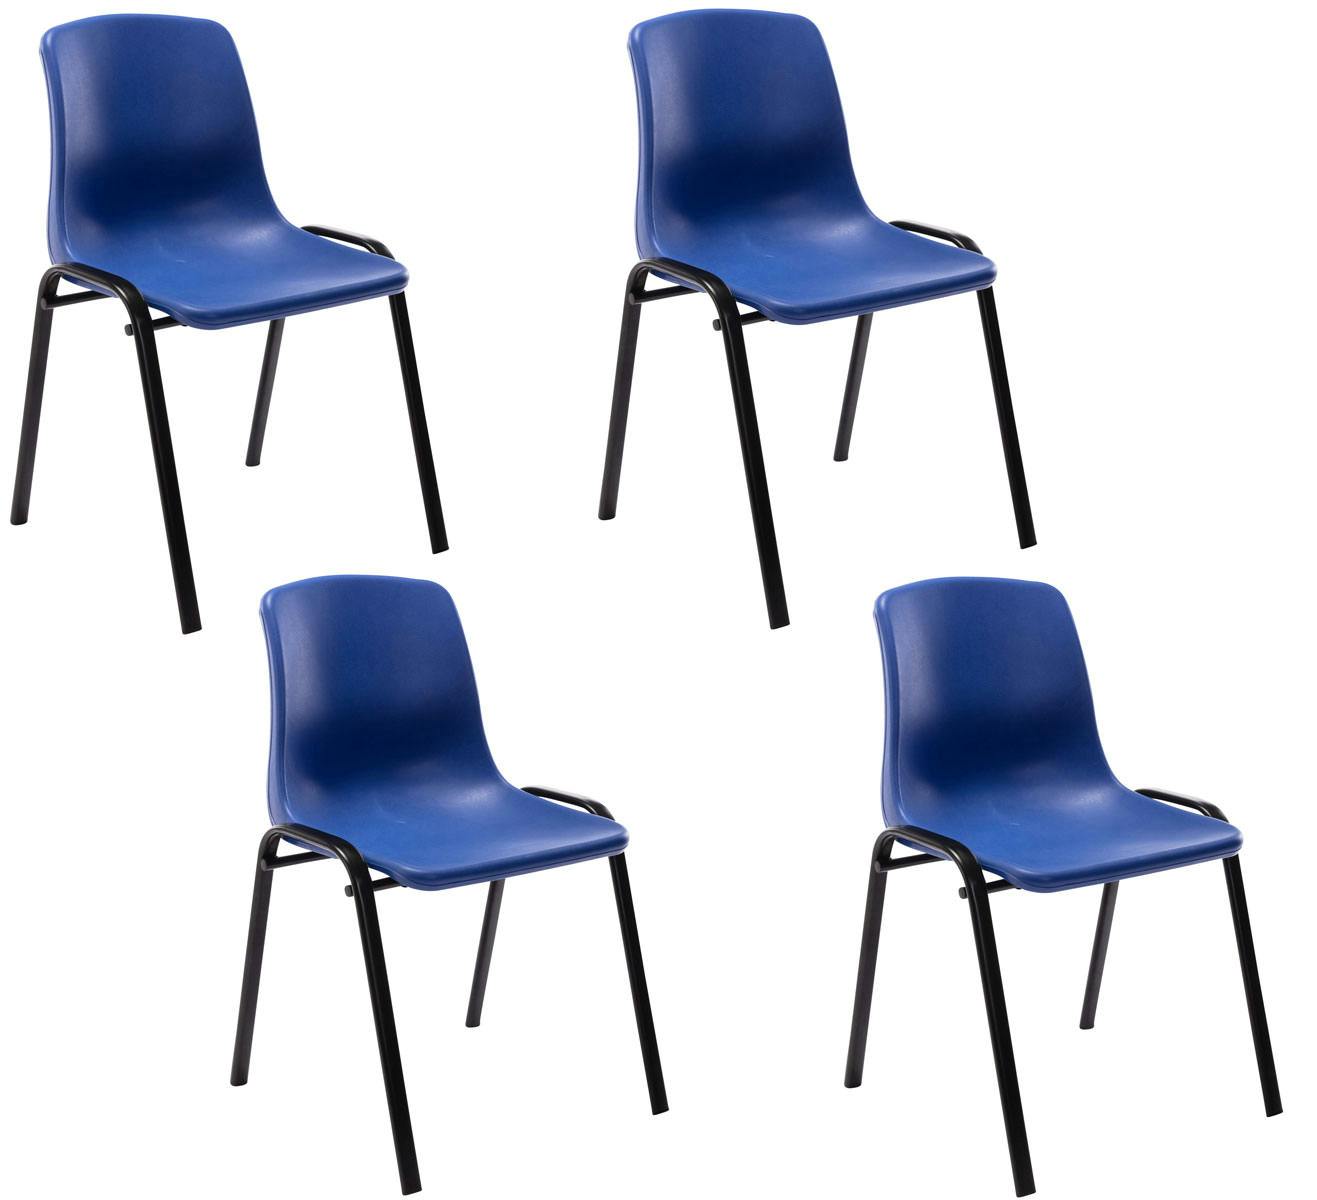 maak je geïrriteerd Sovjet Bedankt Set van 4 stapelstoelen Nowra blauw | MAKRO Webshop